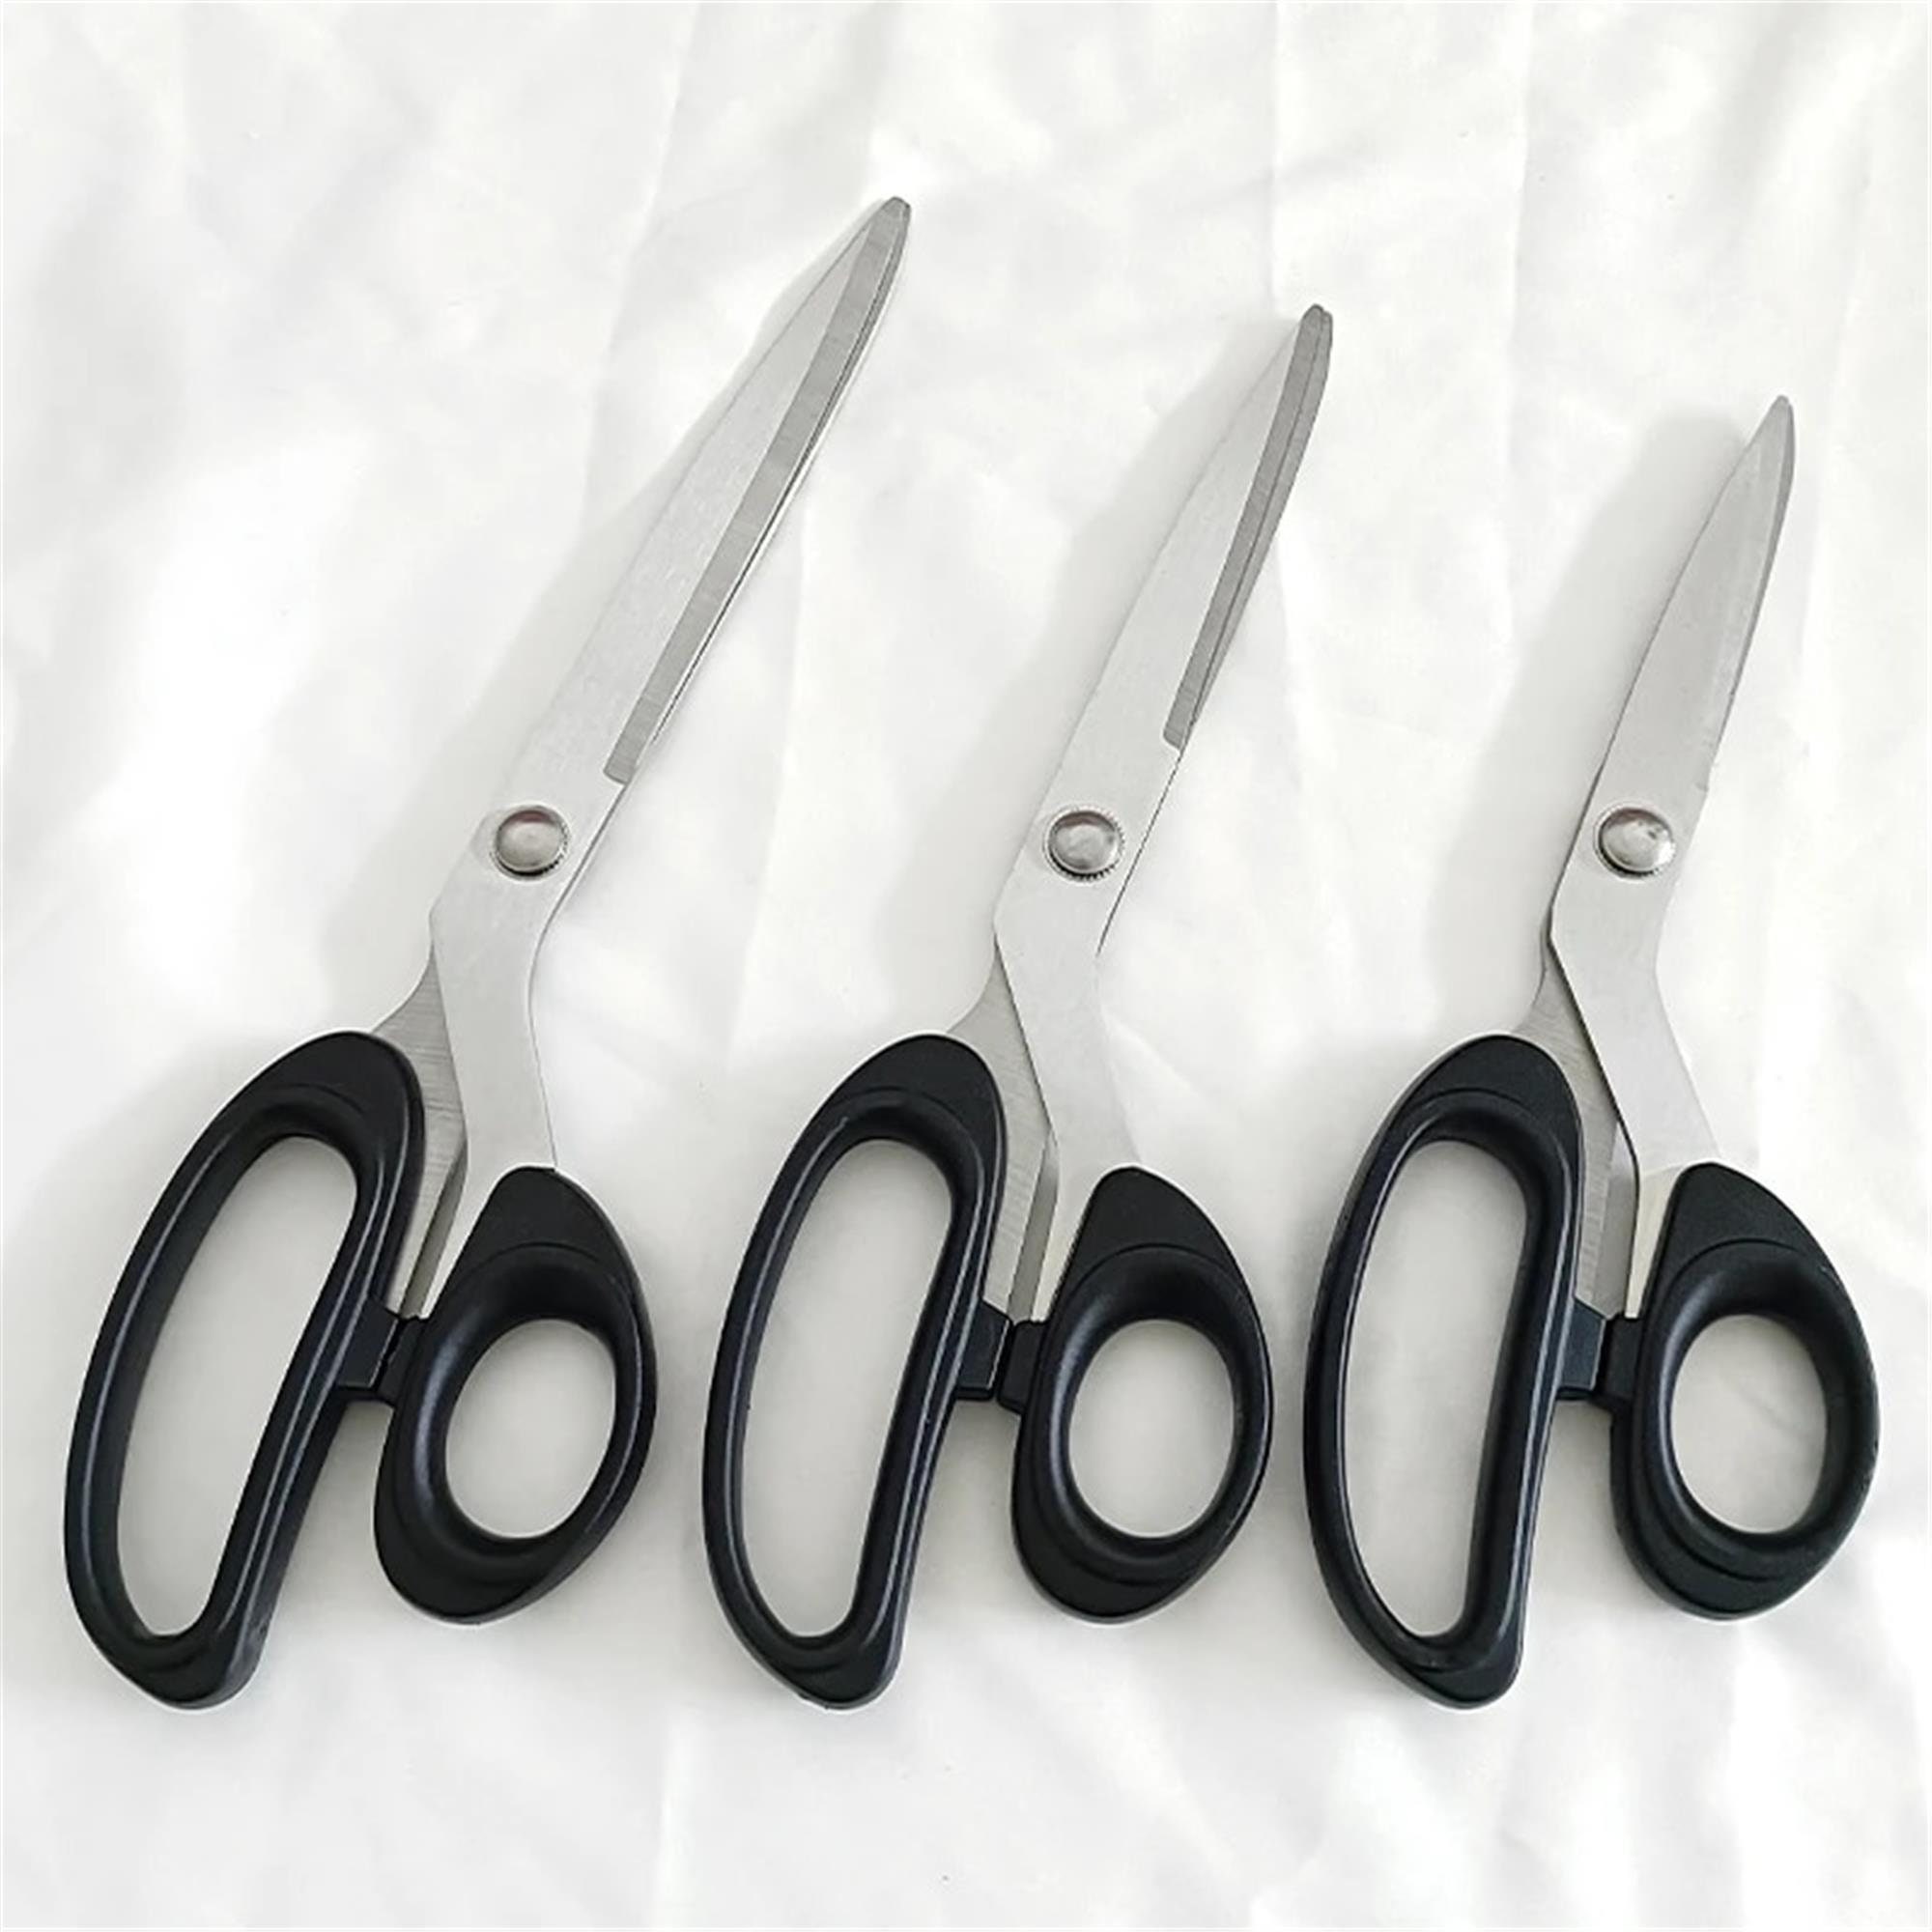 C.S. Osborne 8-1/4 E-Z Cut Leather Shears Scissors #708 Made In